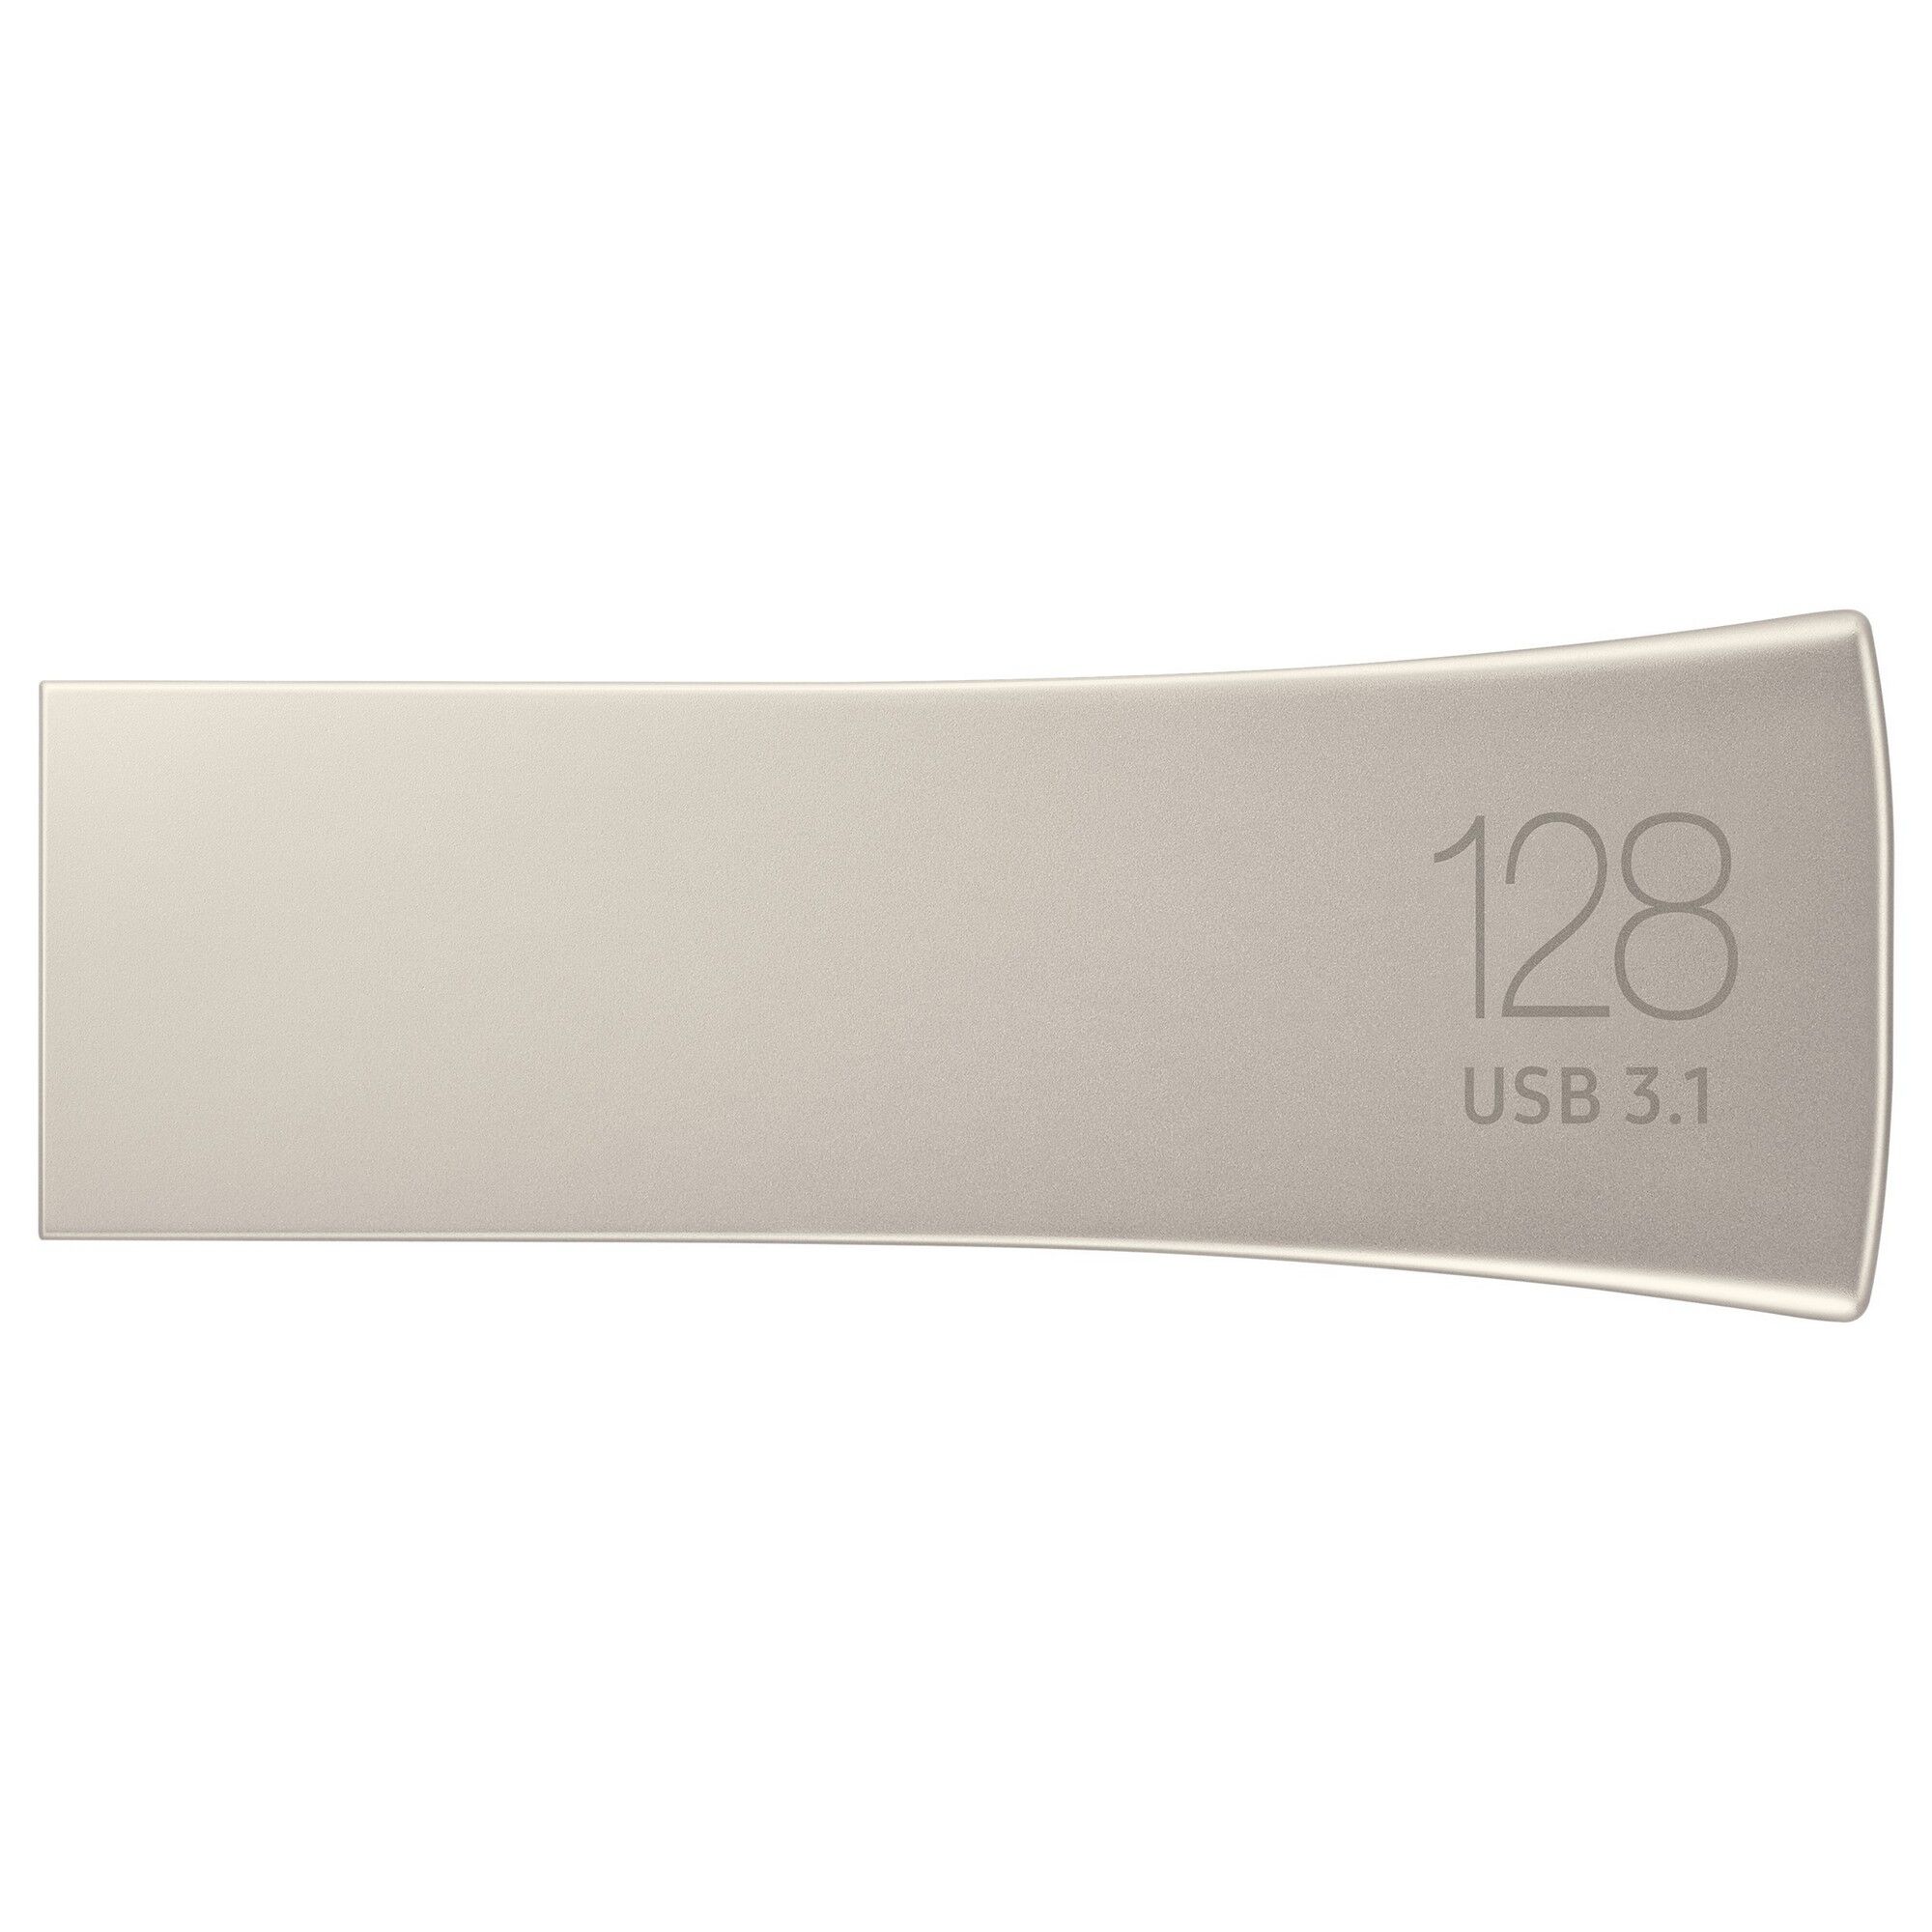 Samsung BAR Plus USB 3.1 Silver - 128GB